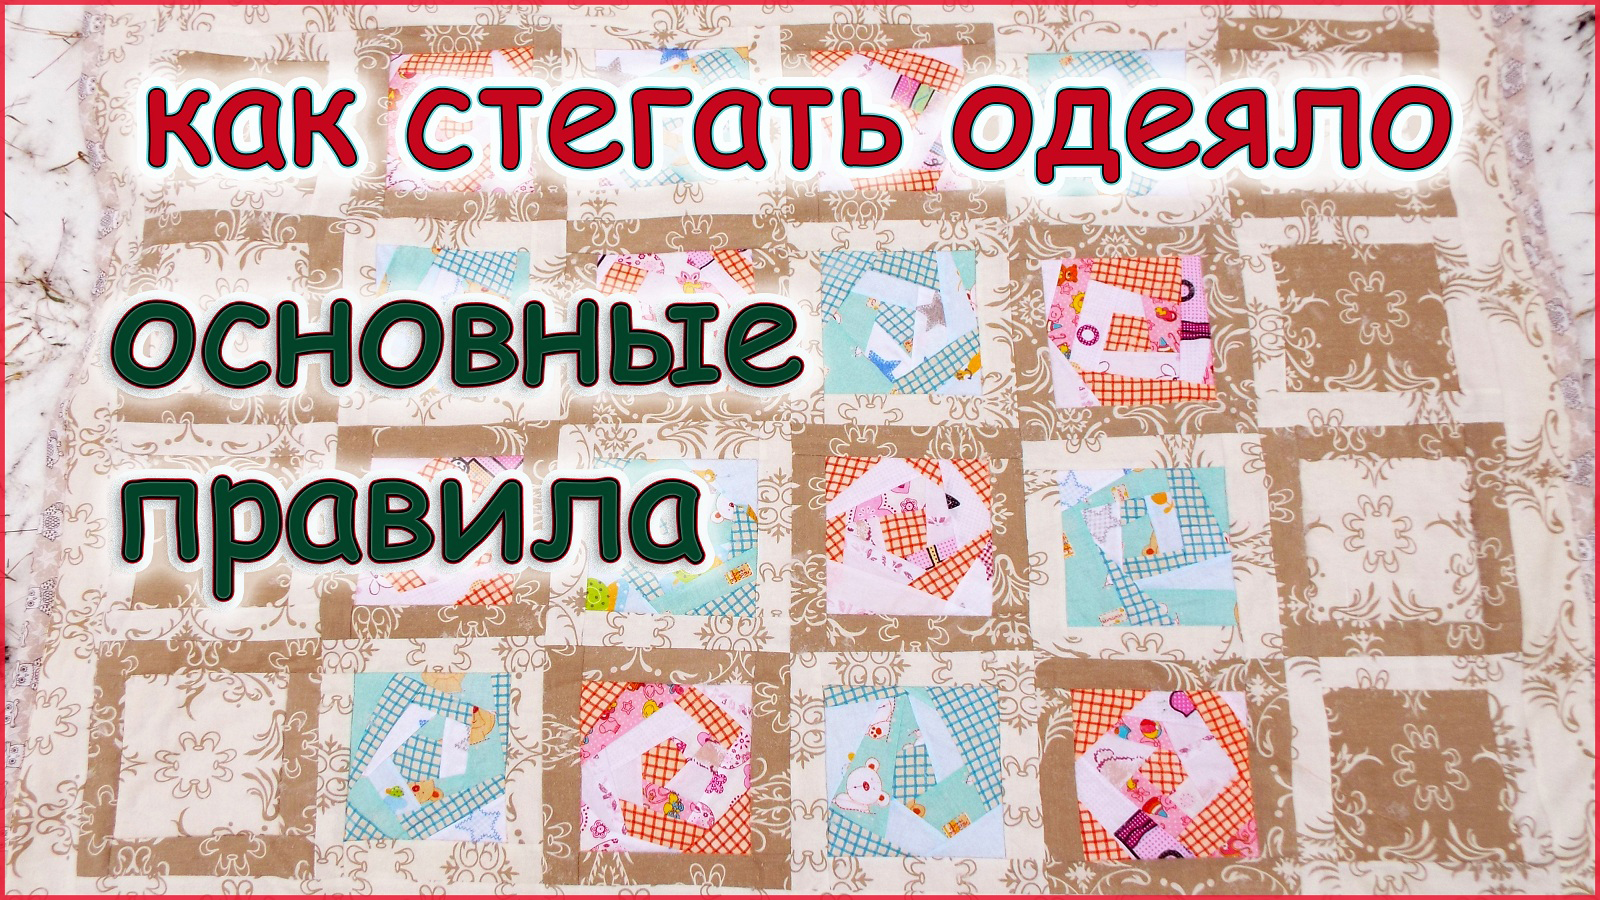 Дешевые одеяла для рабочих и строителей от компании «Матраскин» в СПб